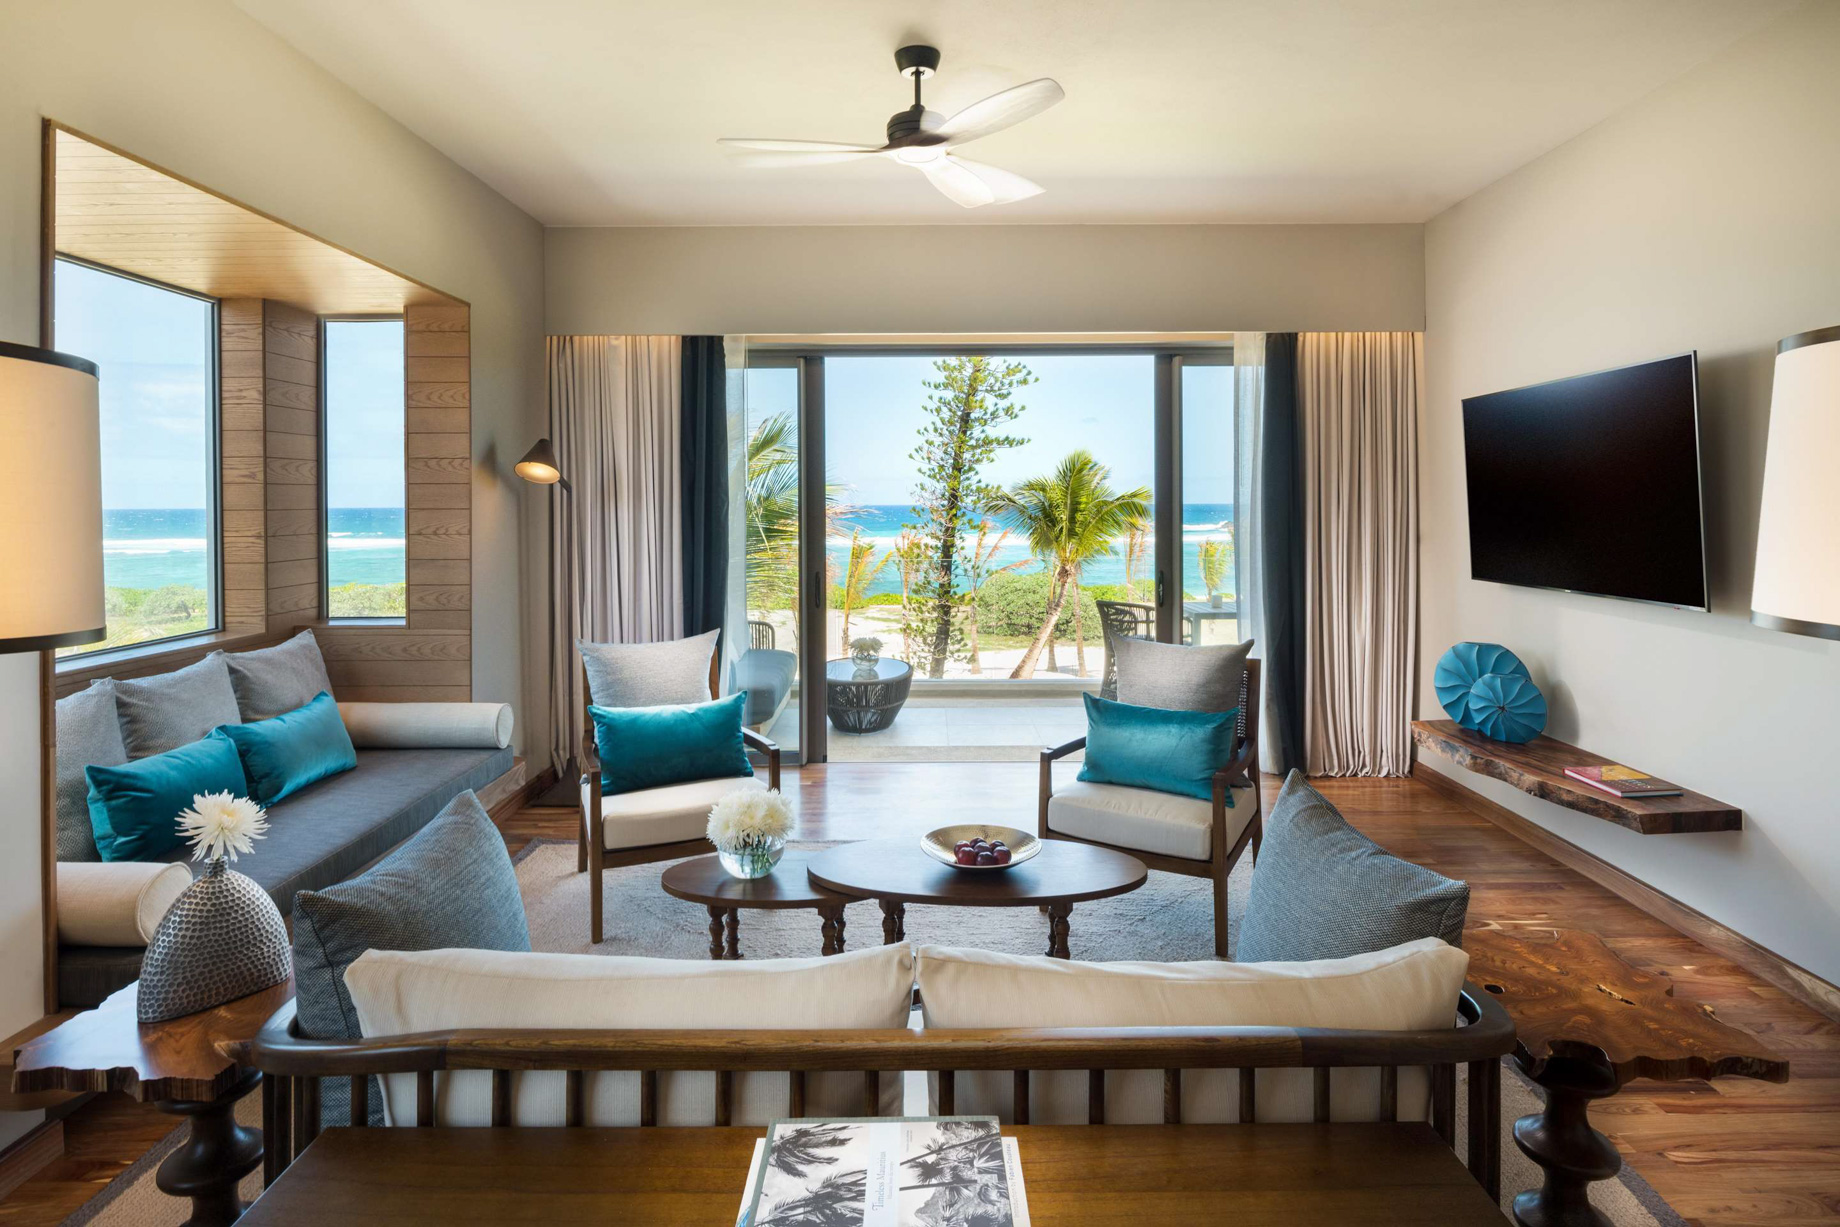 Anantara Iko Mauritius Resort & Villas – Plaine Magnien, Mauritius – Ocean View Suite